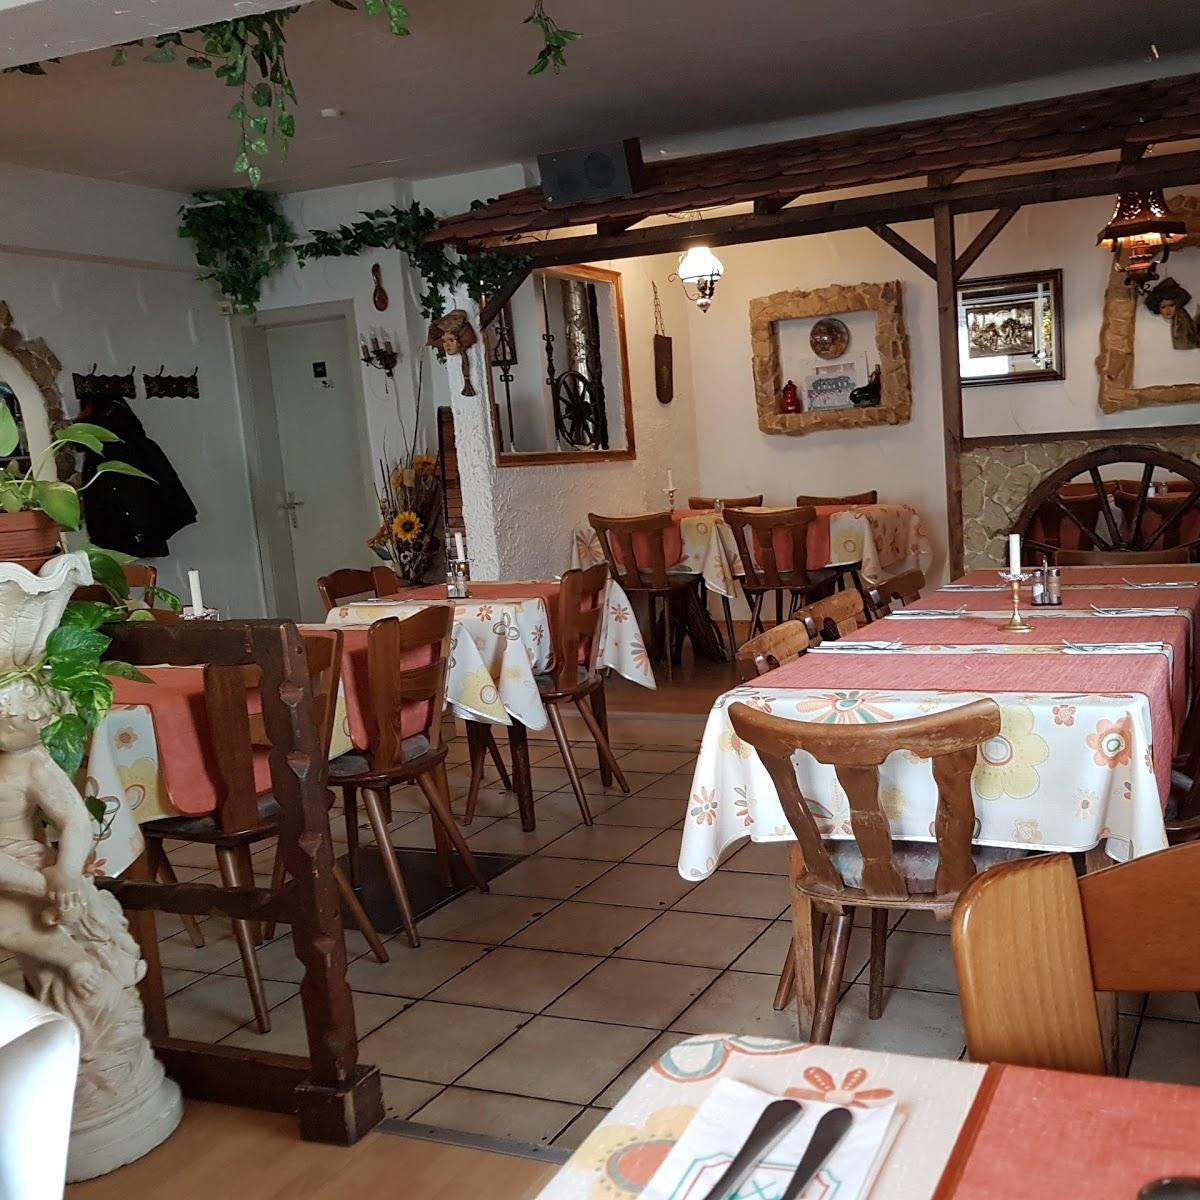 Restaurant "Ristorante Pizzeria Italia" in  Tuttlingen